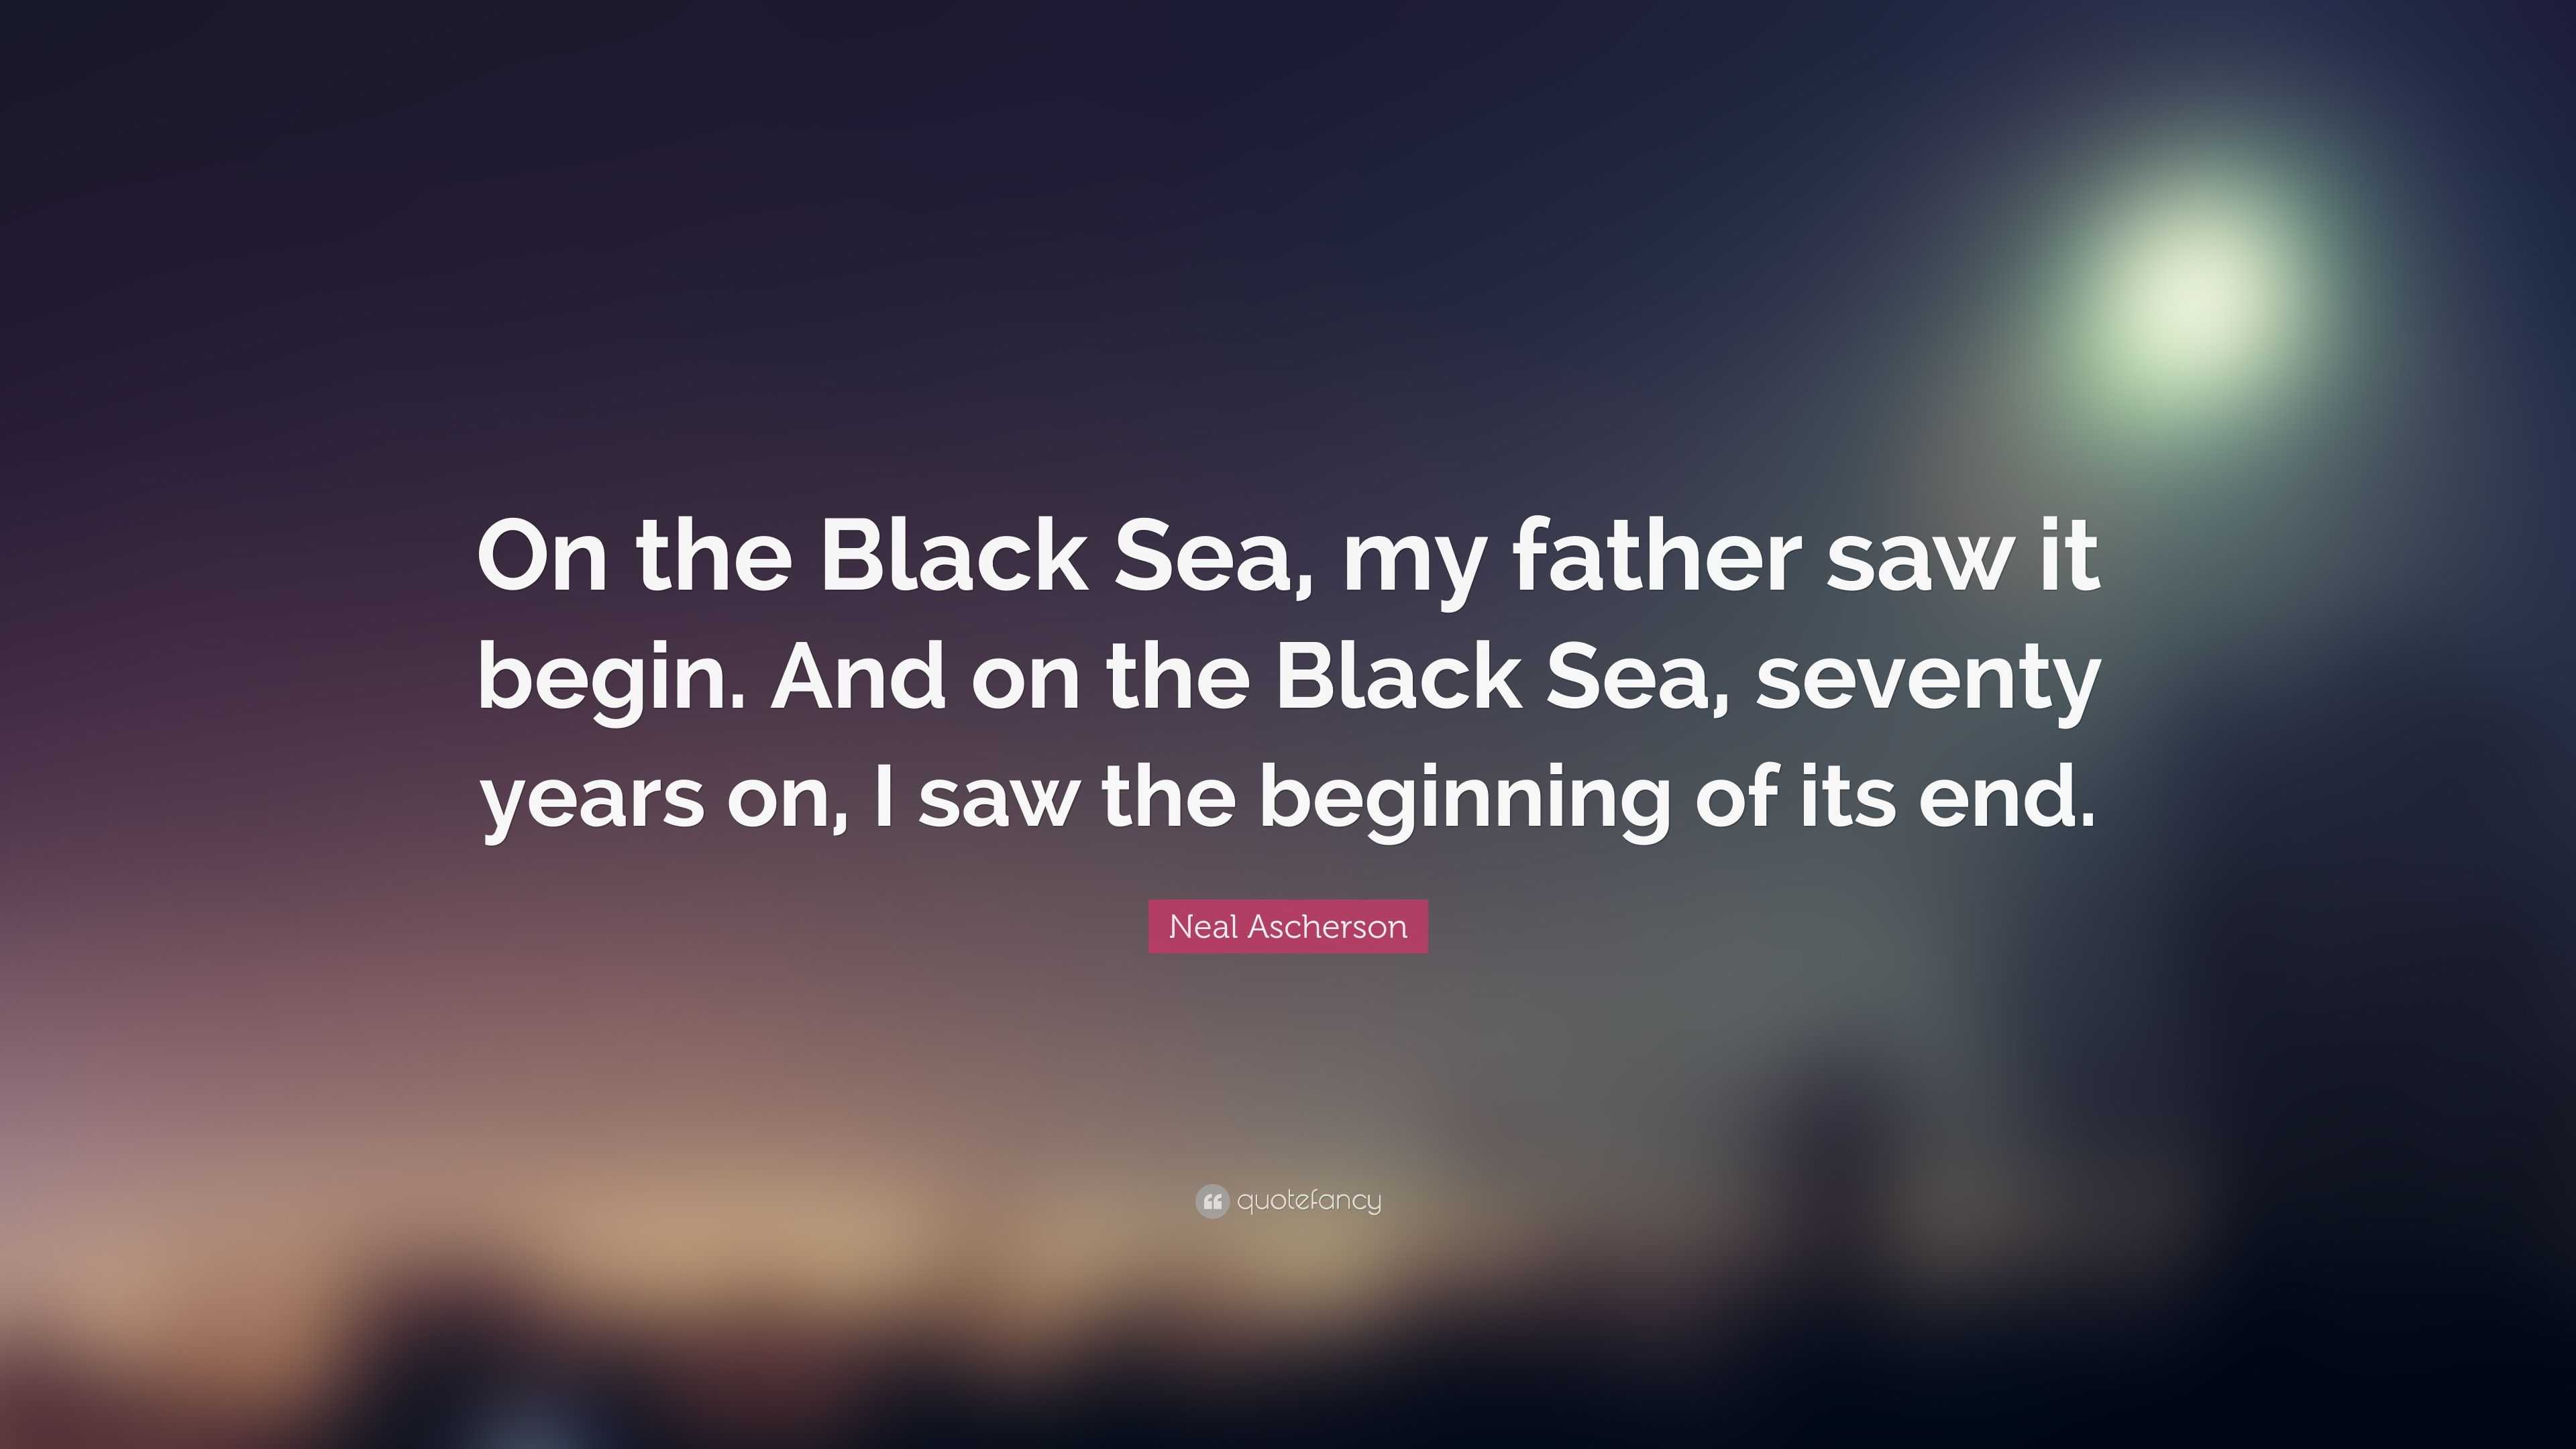 ascherson black sea